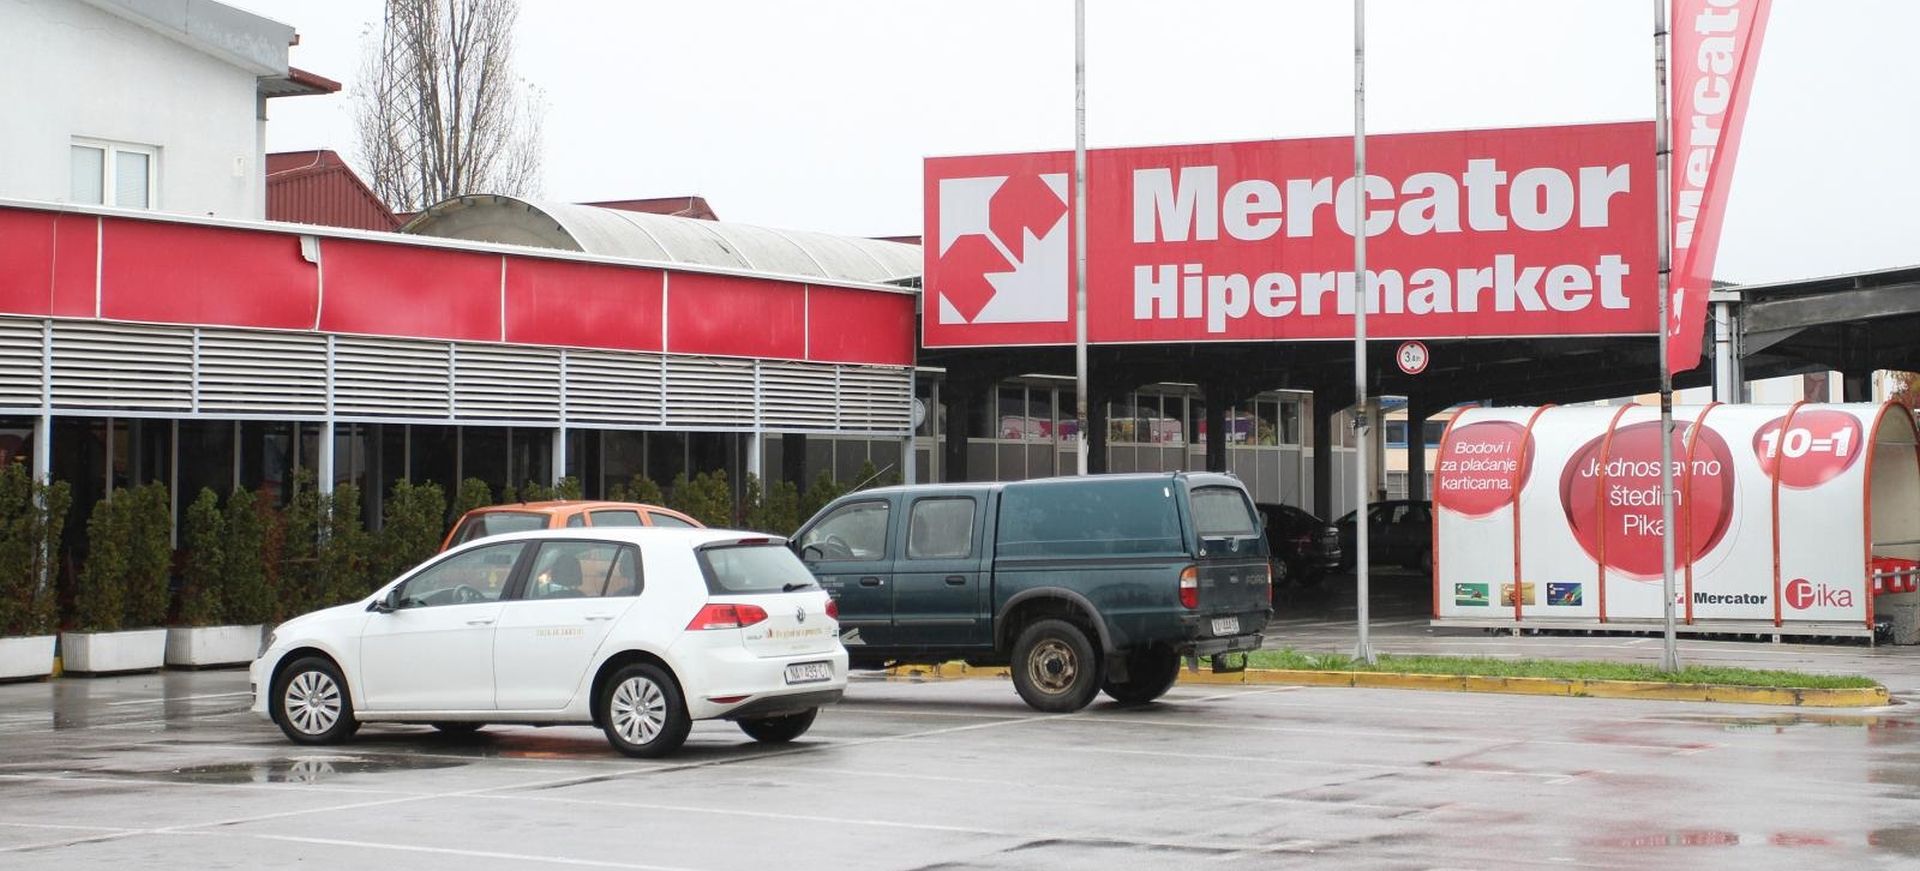 07.11.2014., Karlovac - Prostor nekadasnjeg trgovackog centra Mercator na Baniji je u vlasnistvu Konzuma.
Photo: Kristina Stedul Fabac/PIXSELL